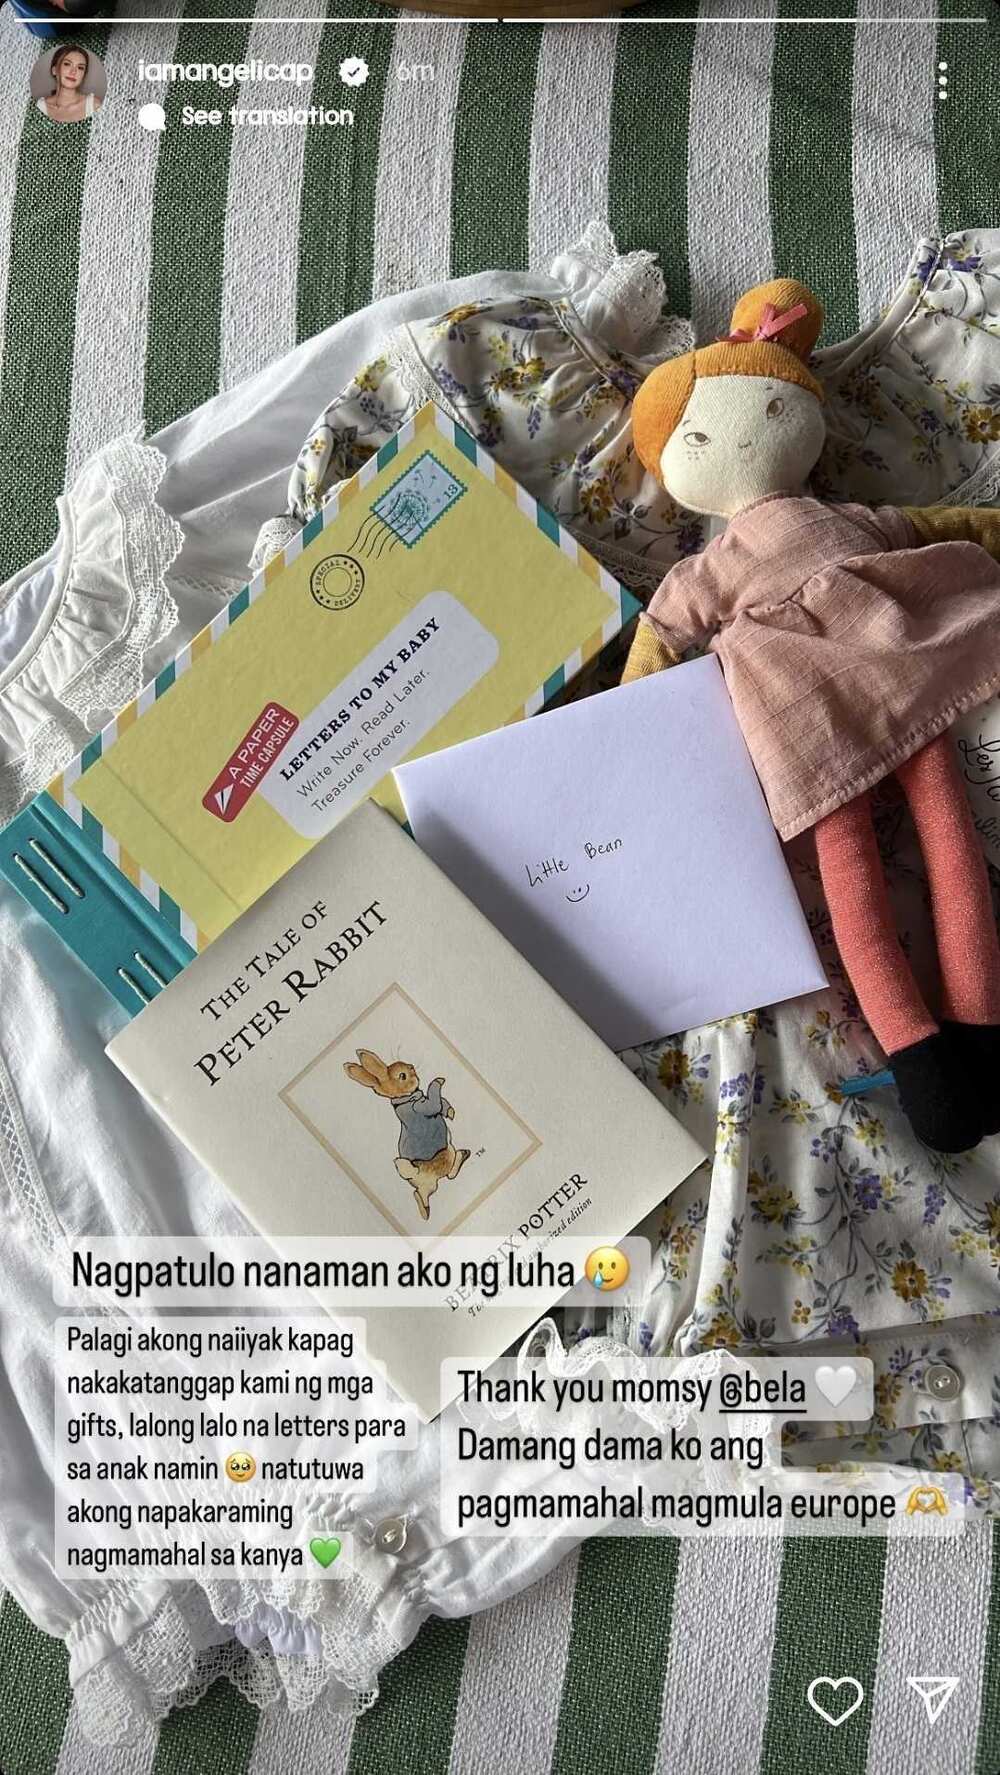 Angelica Panganiban, naiyak sa pinadalang regalo ni Bela Padilla para sa kanyang anak